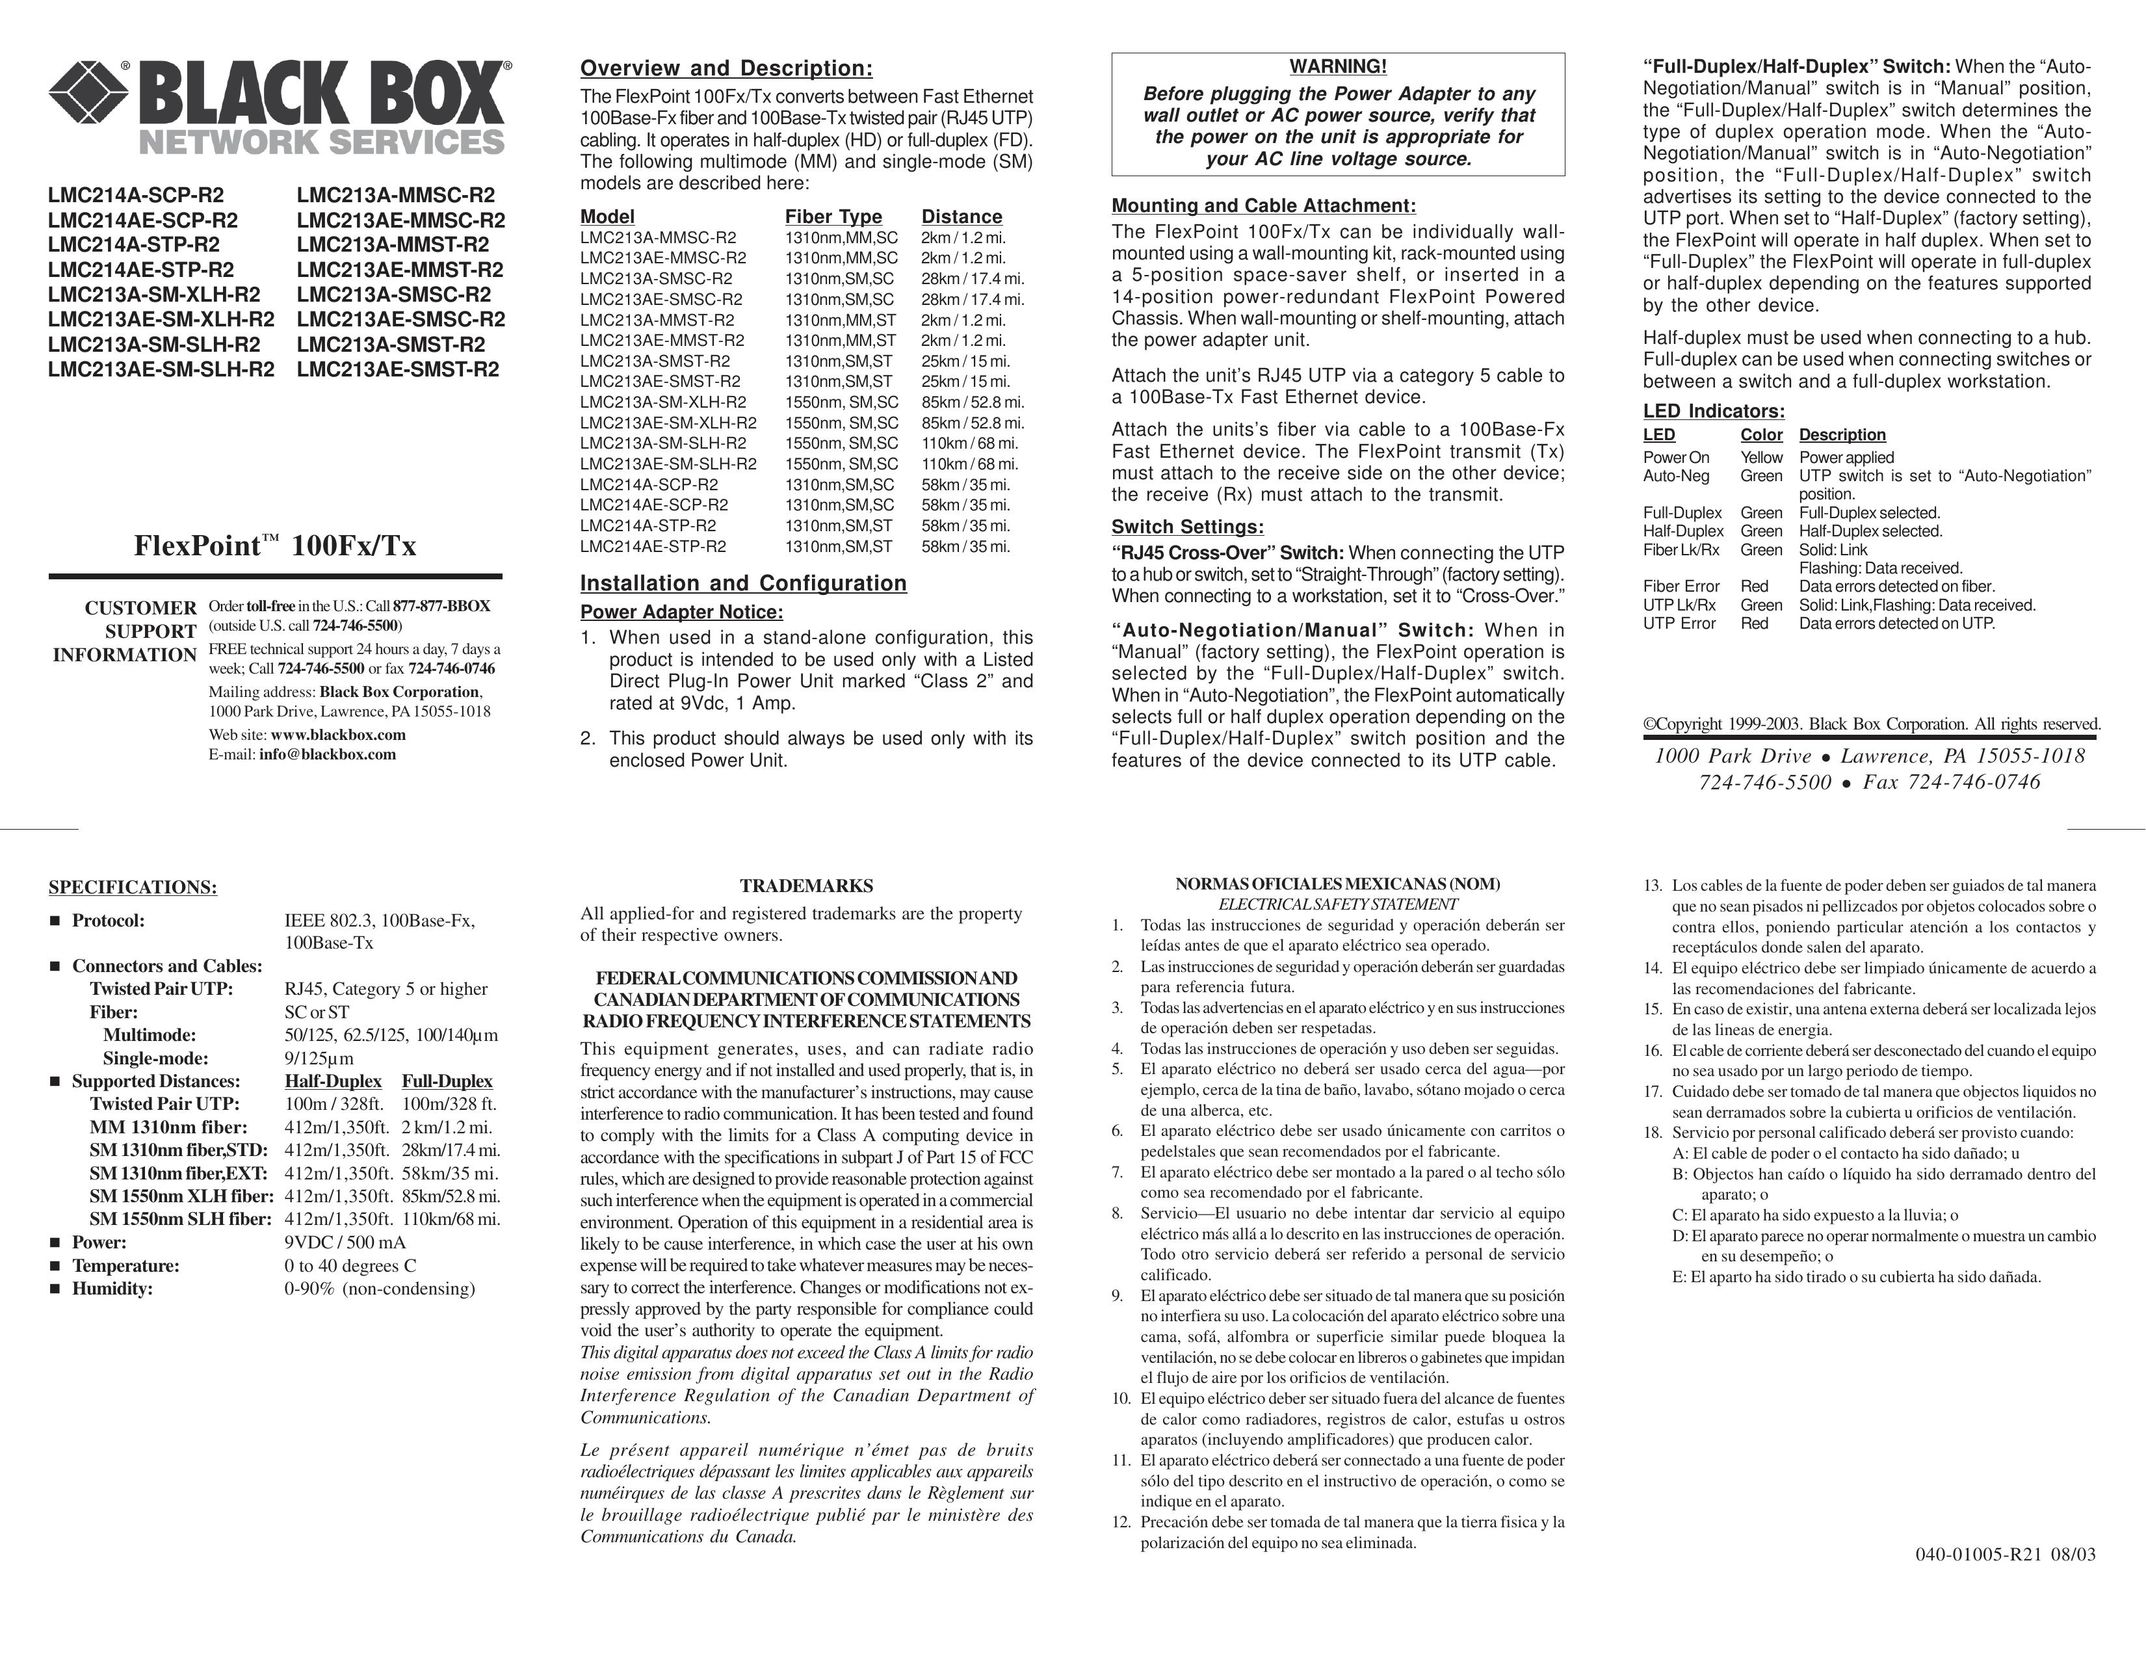 Black Box LMC213AE-MMST-R2 Power Supply User Manual